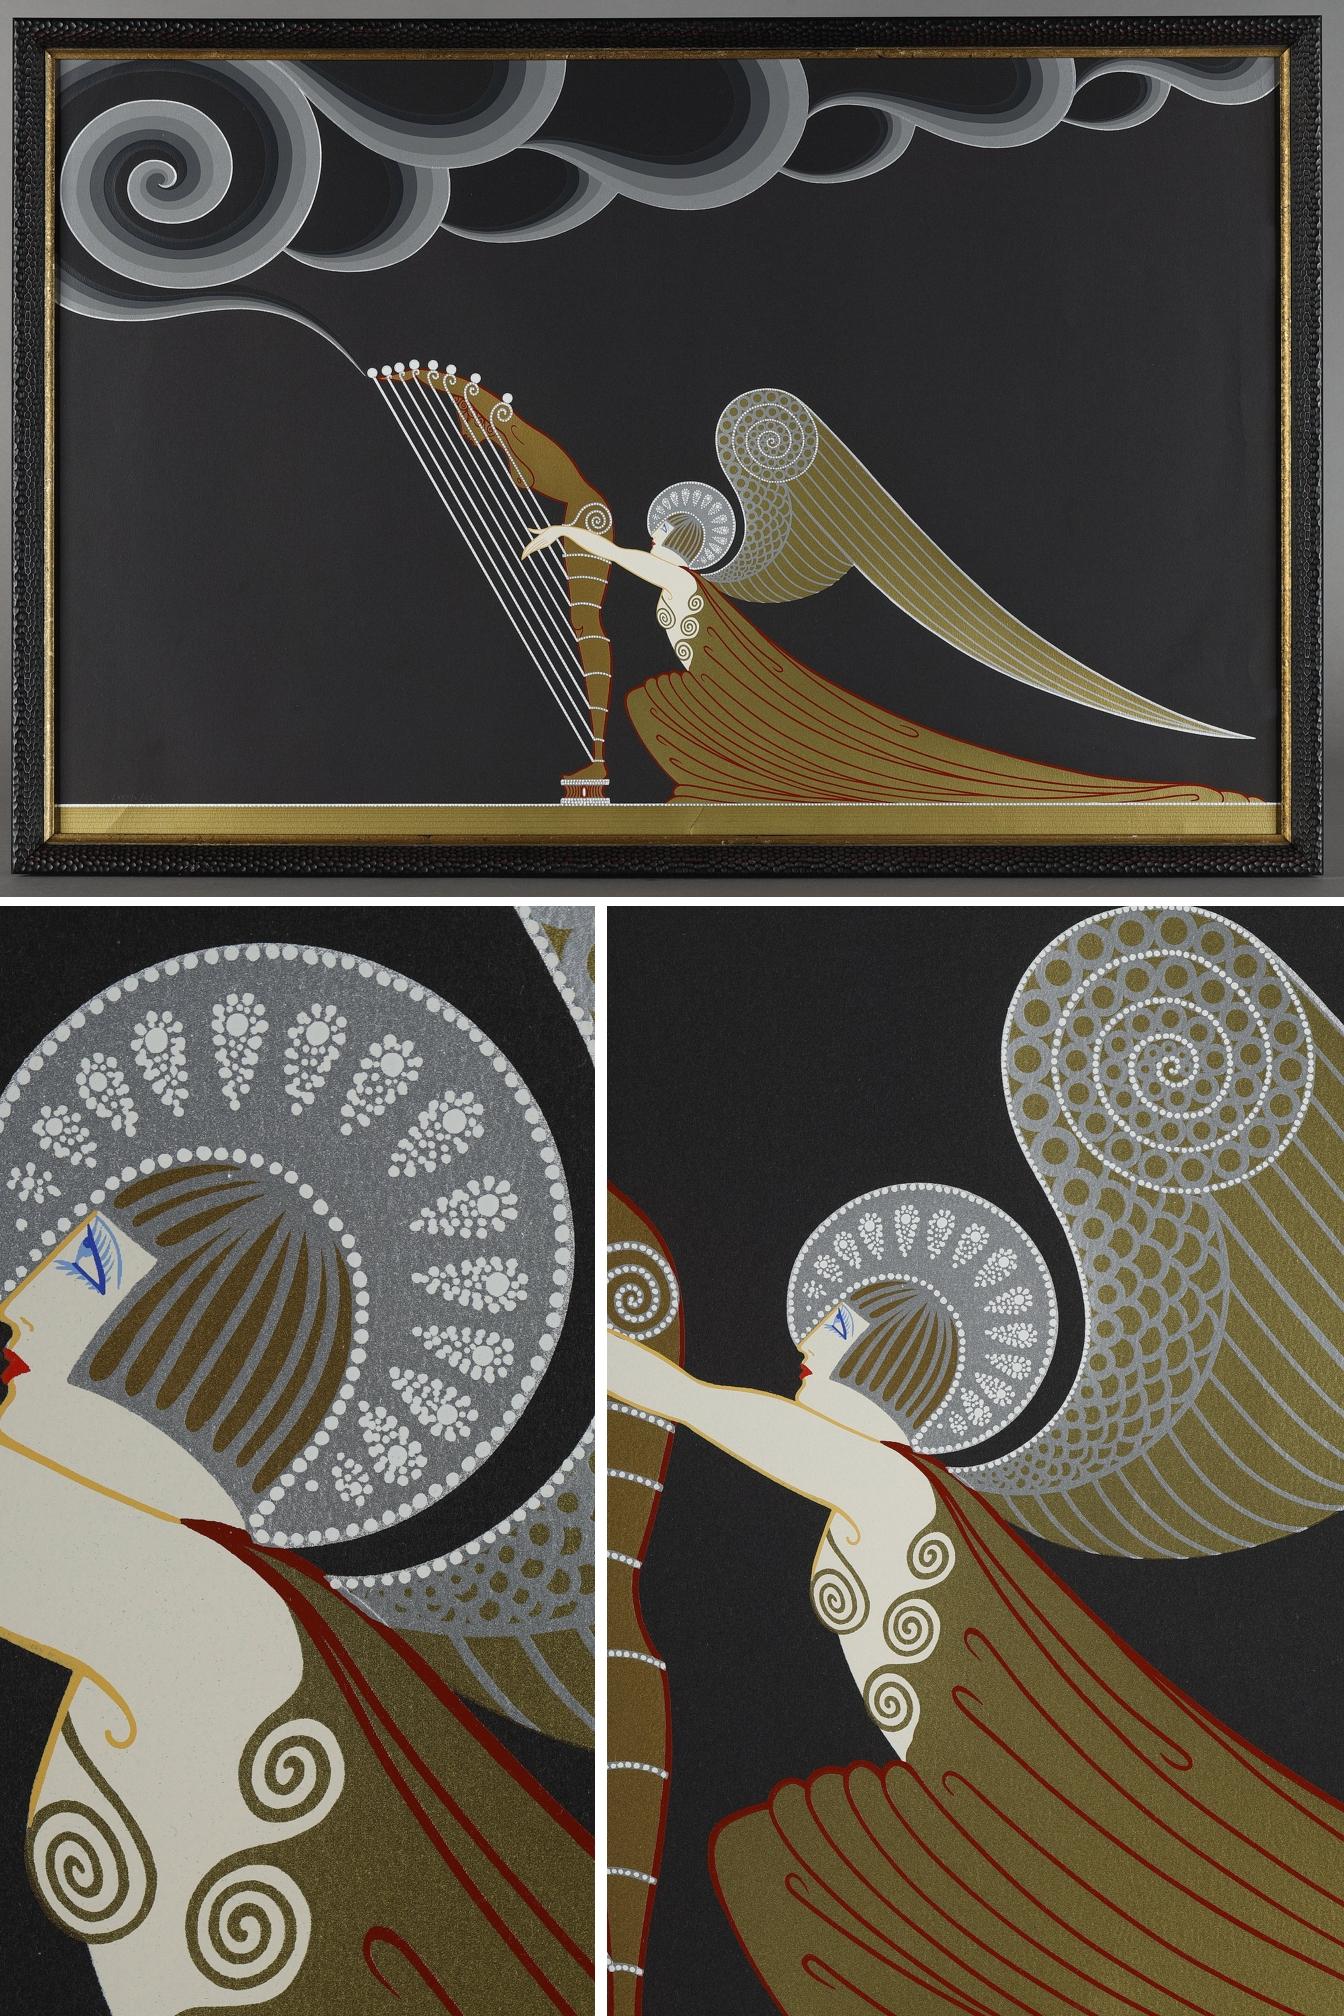 L'ange à la harpe, lithographie en couleurs numérotée LXXXIV/CL de Romain de Tirtoff dit Erté (1892-1990).

Il est né à Saint-Pétersbourg dans une célèbre famille russe dont le père était amiral de la flotte impériale. Il s'installe à Paris en 1912